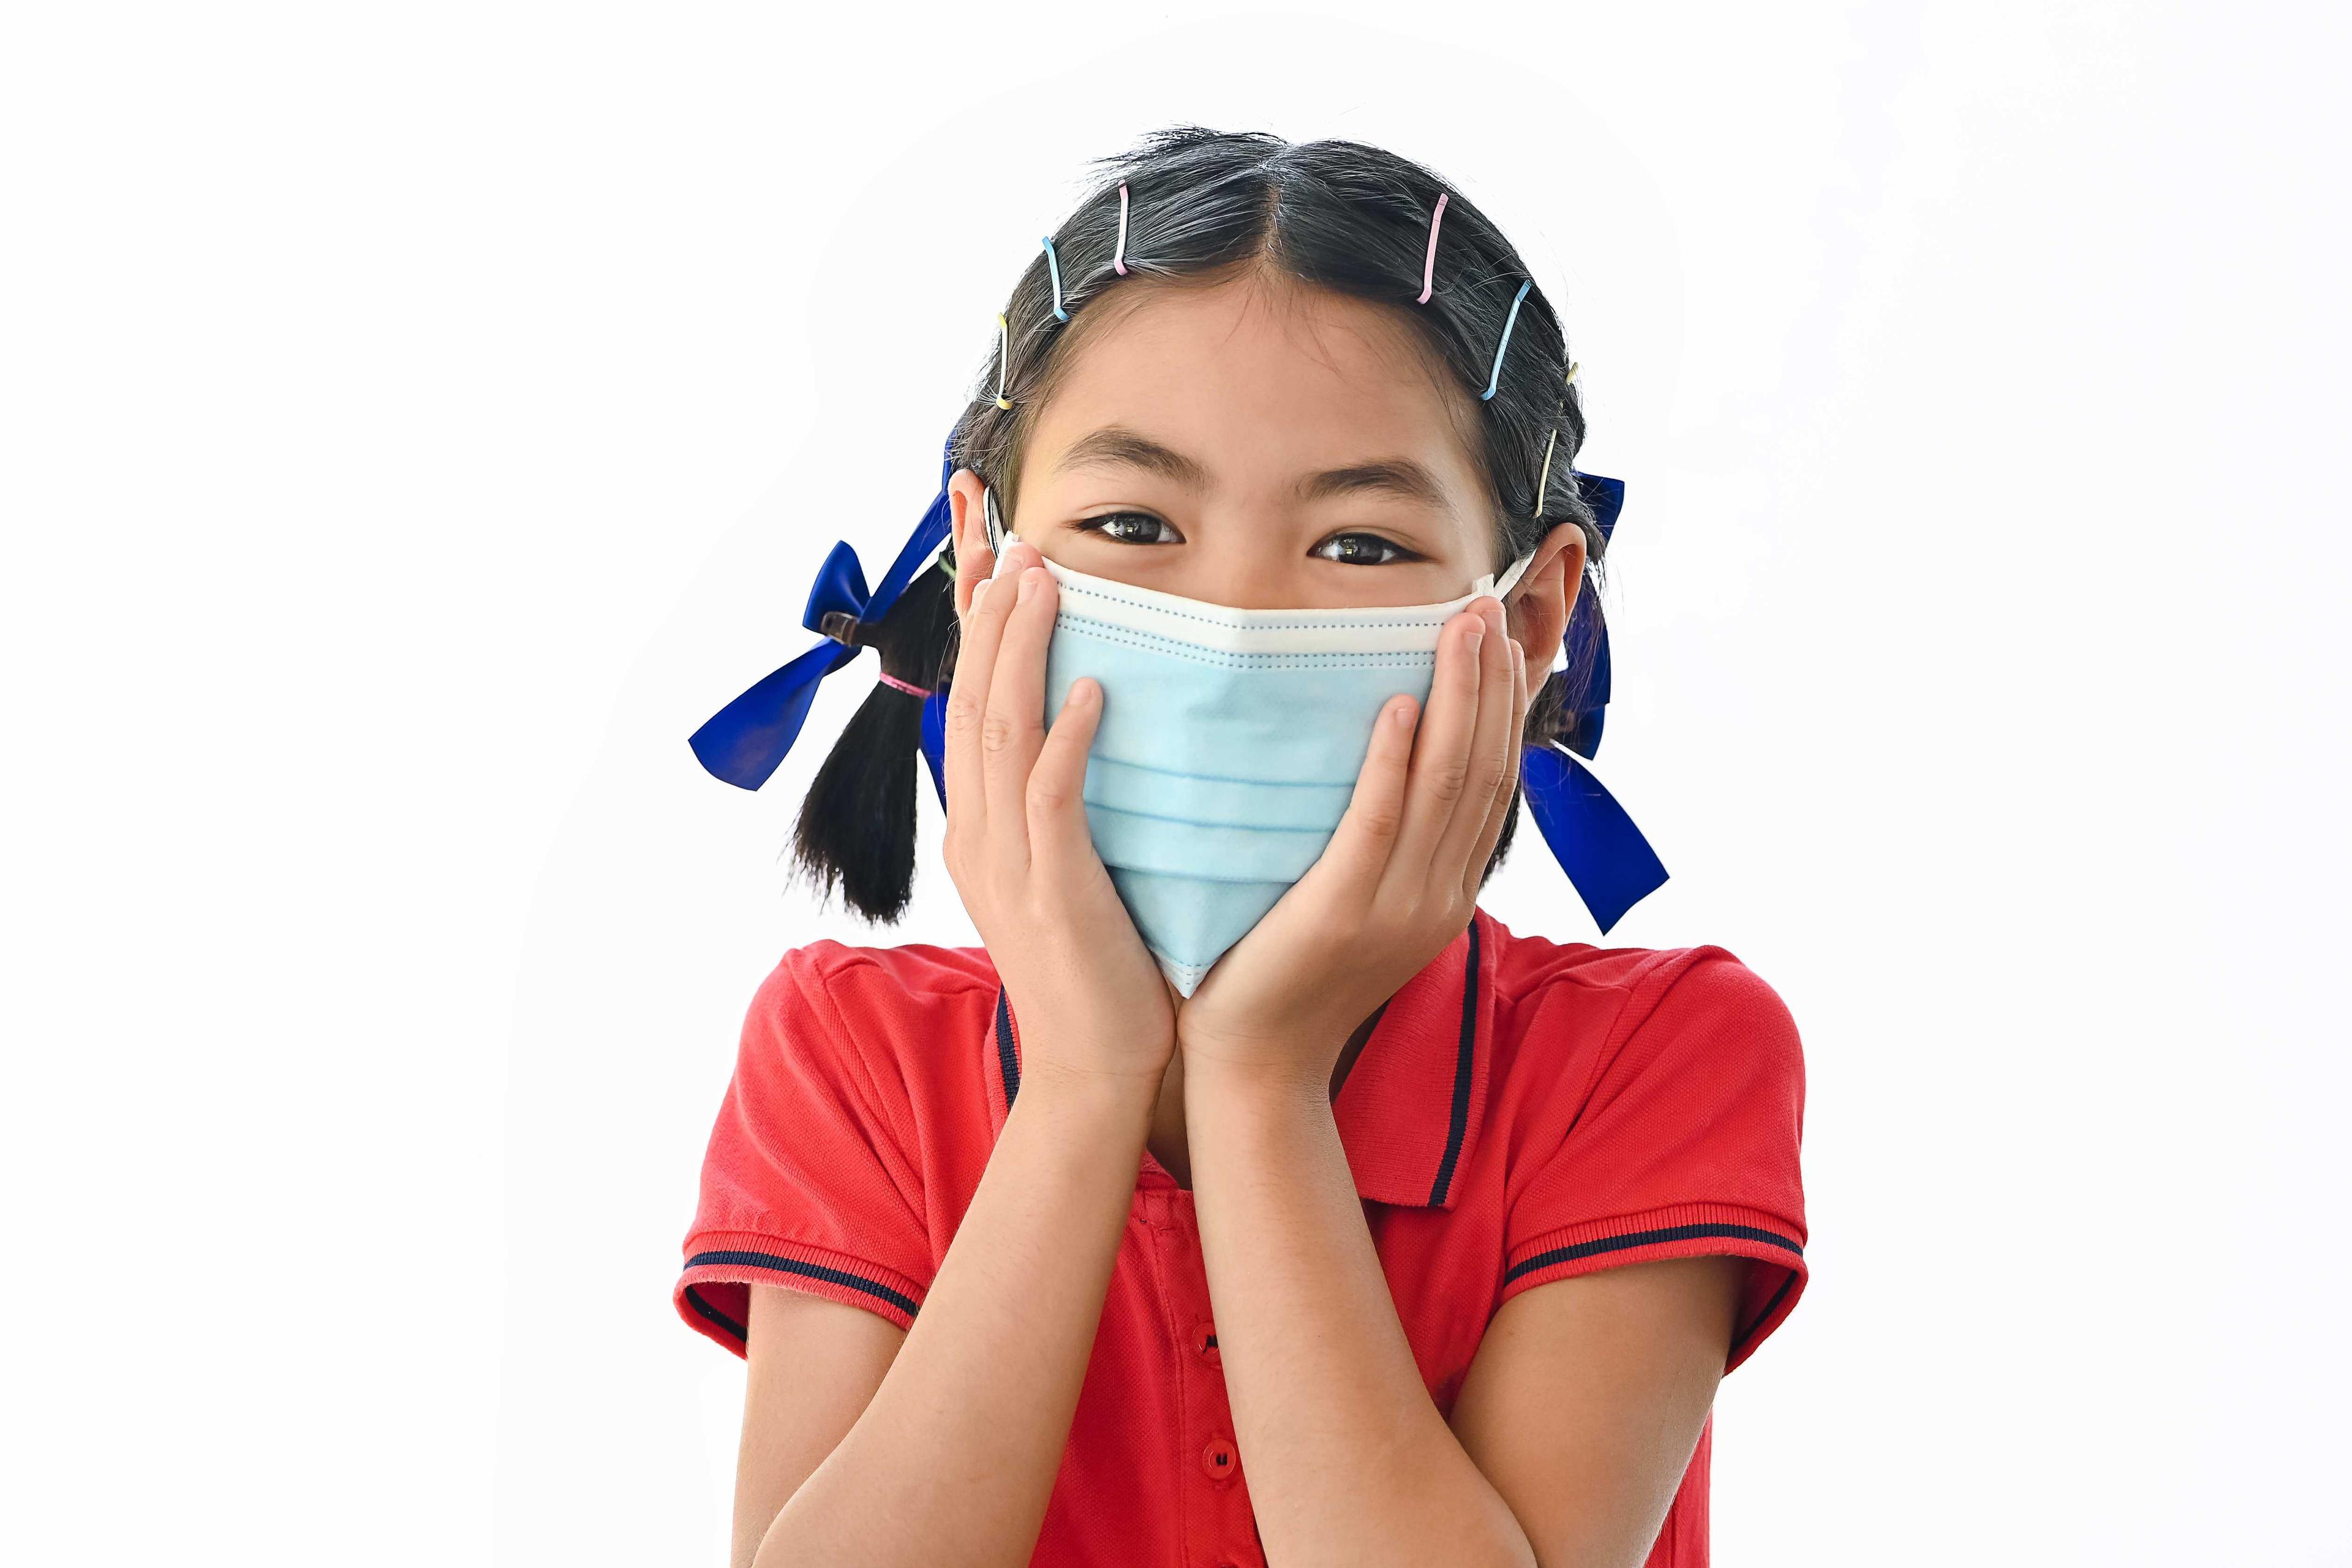 क्या आप कोरोना वायरस महामारी के दौरान बच्चों को सुरक्षित रख रहे हैं?